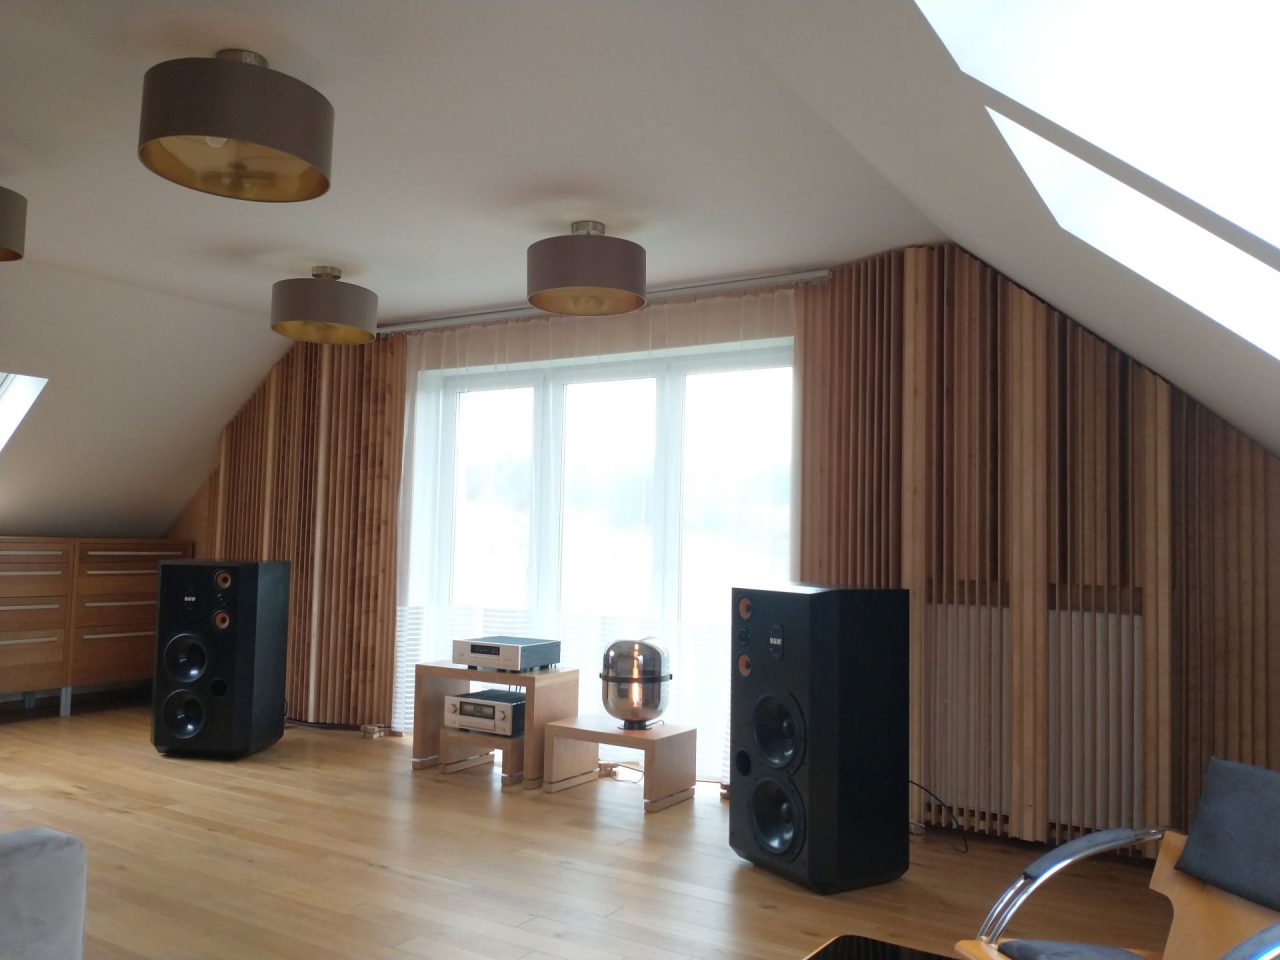 Adaptacja akustyczna ścian w pokoju odsłuchowym